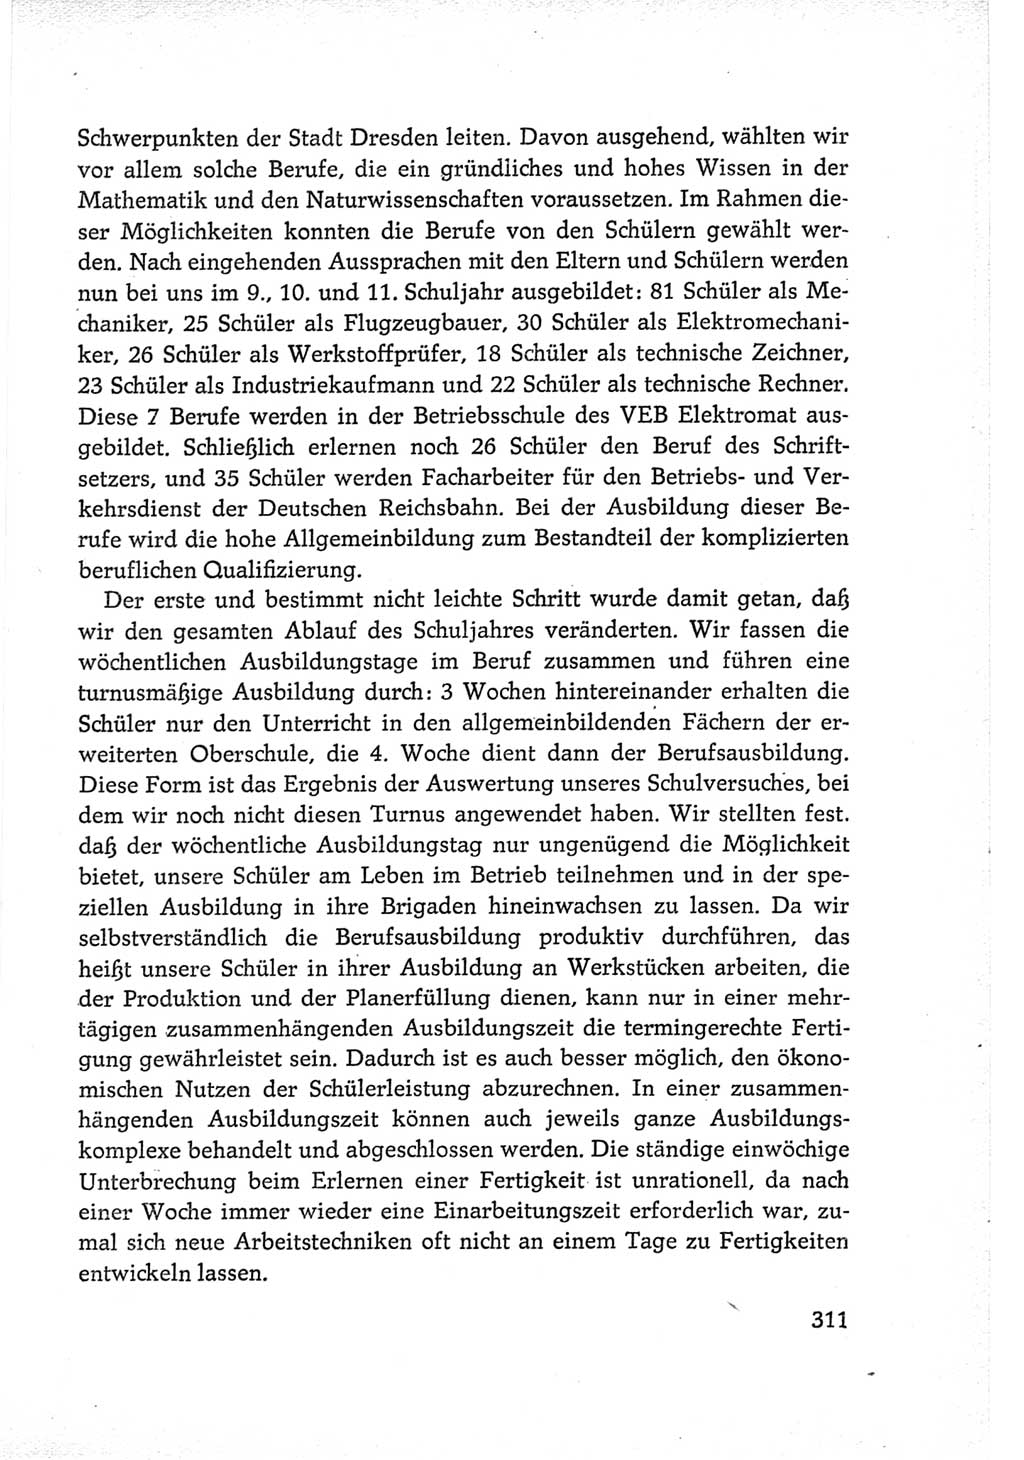 Protokoll der Verhandlungen des Ⅵ. Parteitages der Sozialistischen Einheitspartei Deutschlands (SED) [Deutsche Demokratische Republik (DDR)] 1963, Band Ⅲ, Seite 311 (Prot. Verh. Ⅵ. PT SED DDR 1963, Bd. Ⅲ, S. 311)